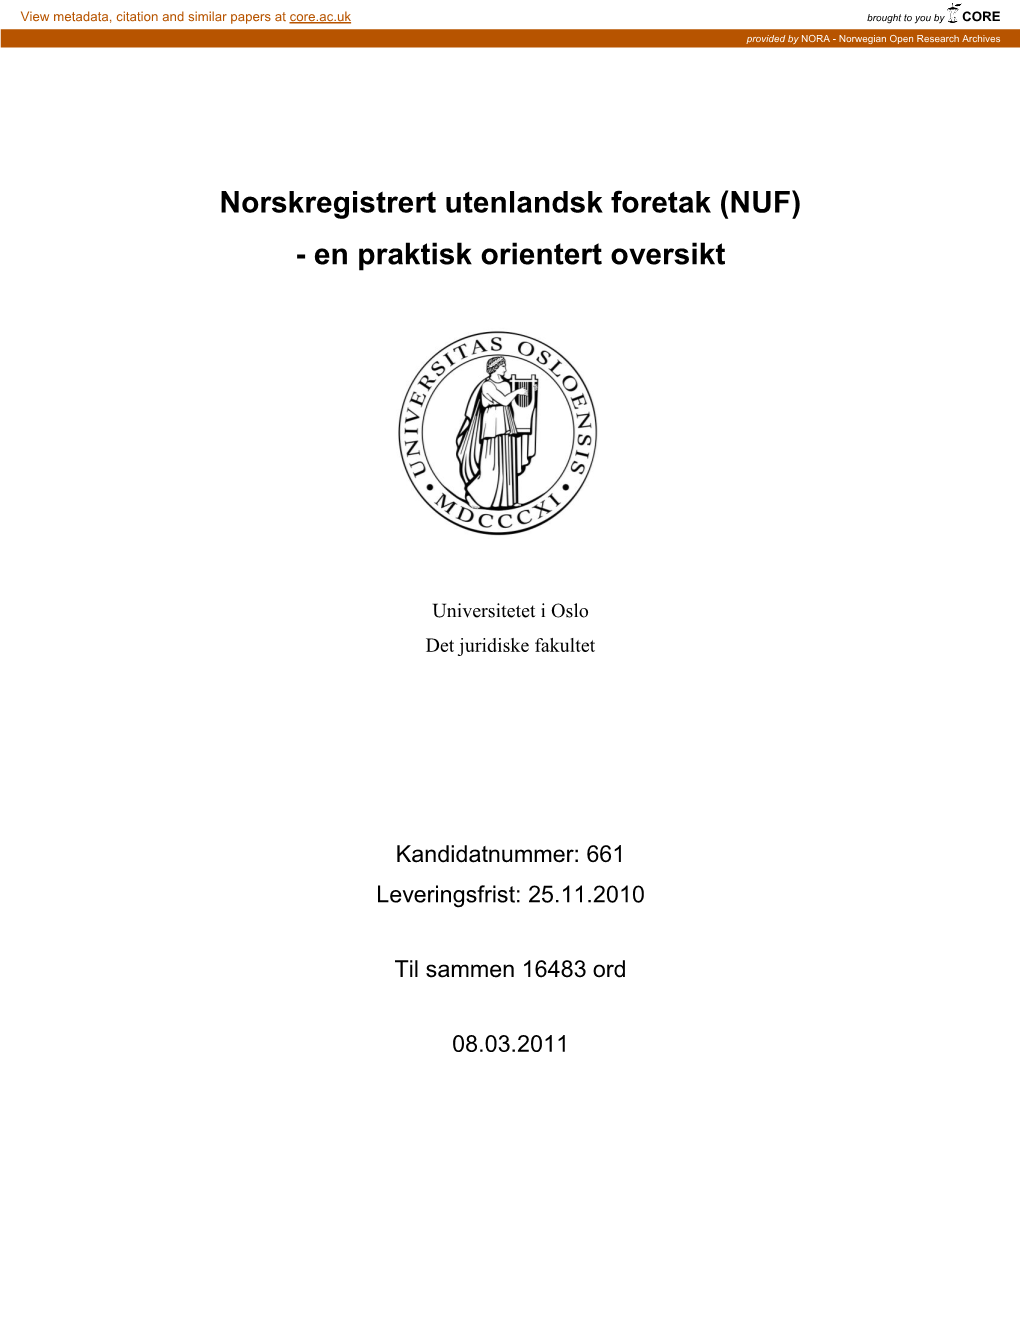 Norskregistrert Utenlandsk Foretak (NUF) - En Praktisk Orientert Oversikt